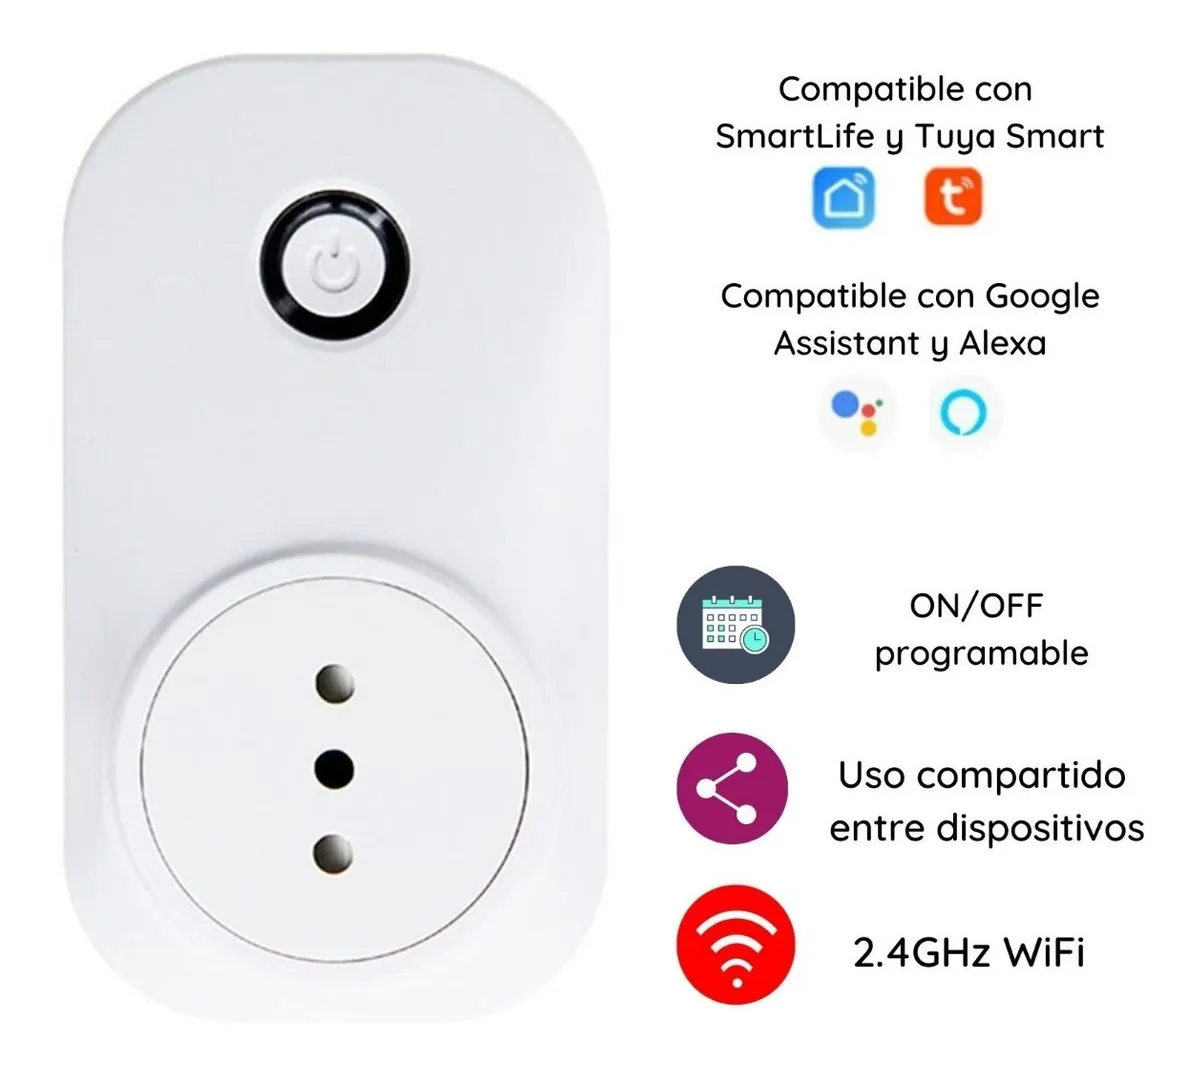 Enchufe wi-fi compatible Google Home y  Alexa mediante la app  SmartLife